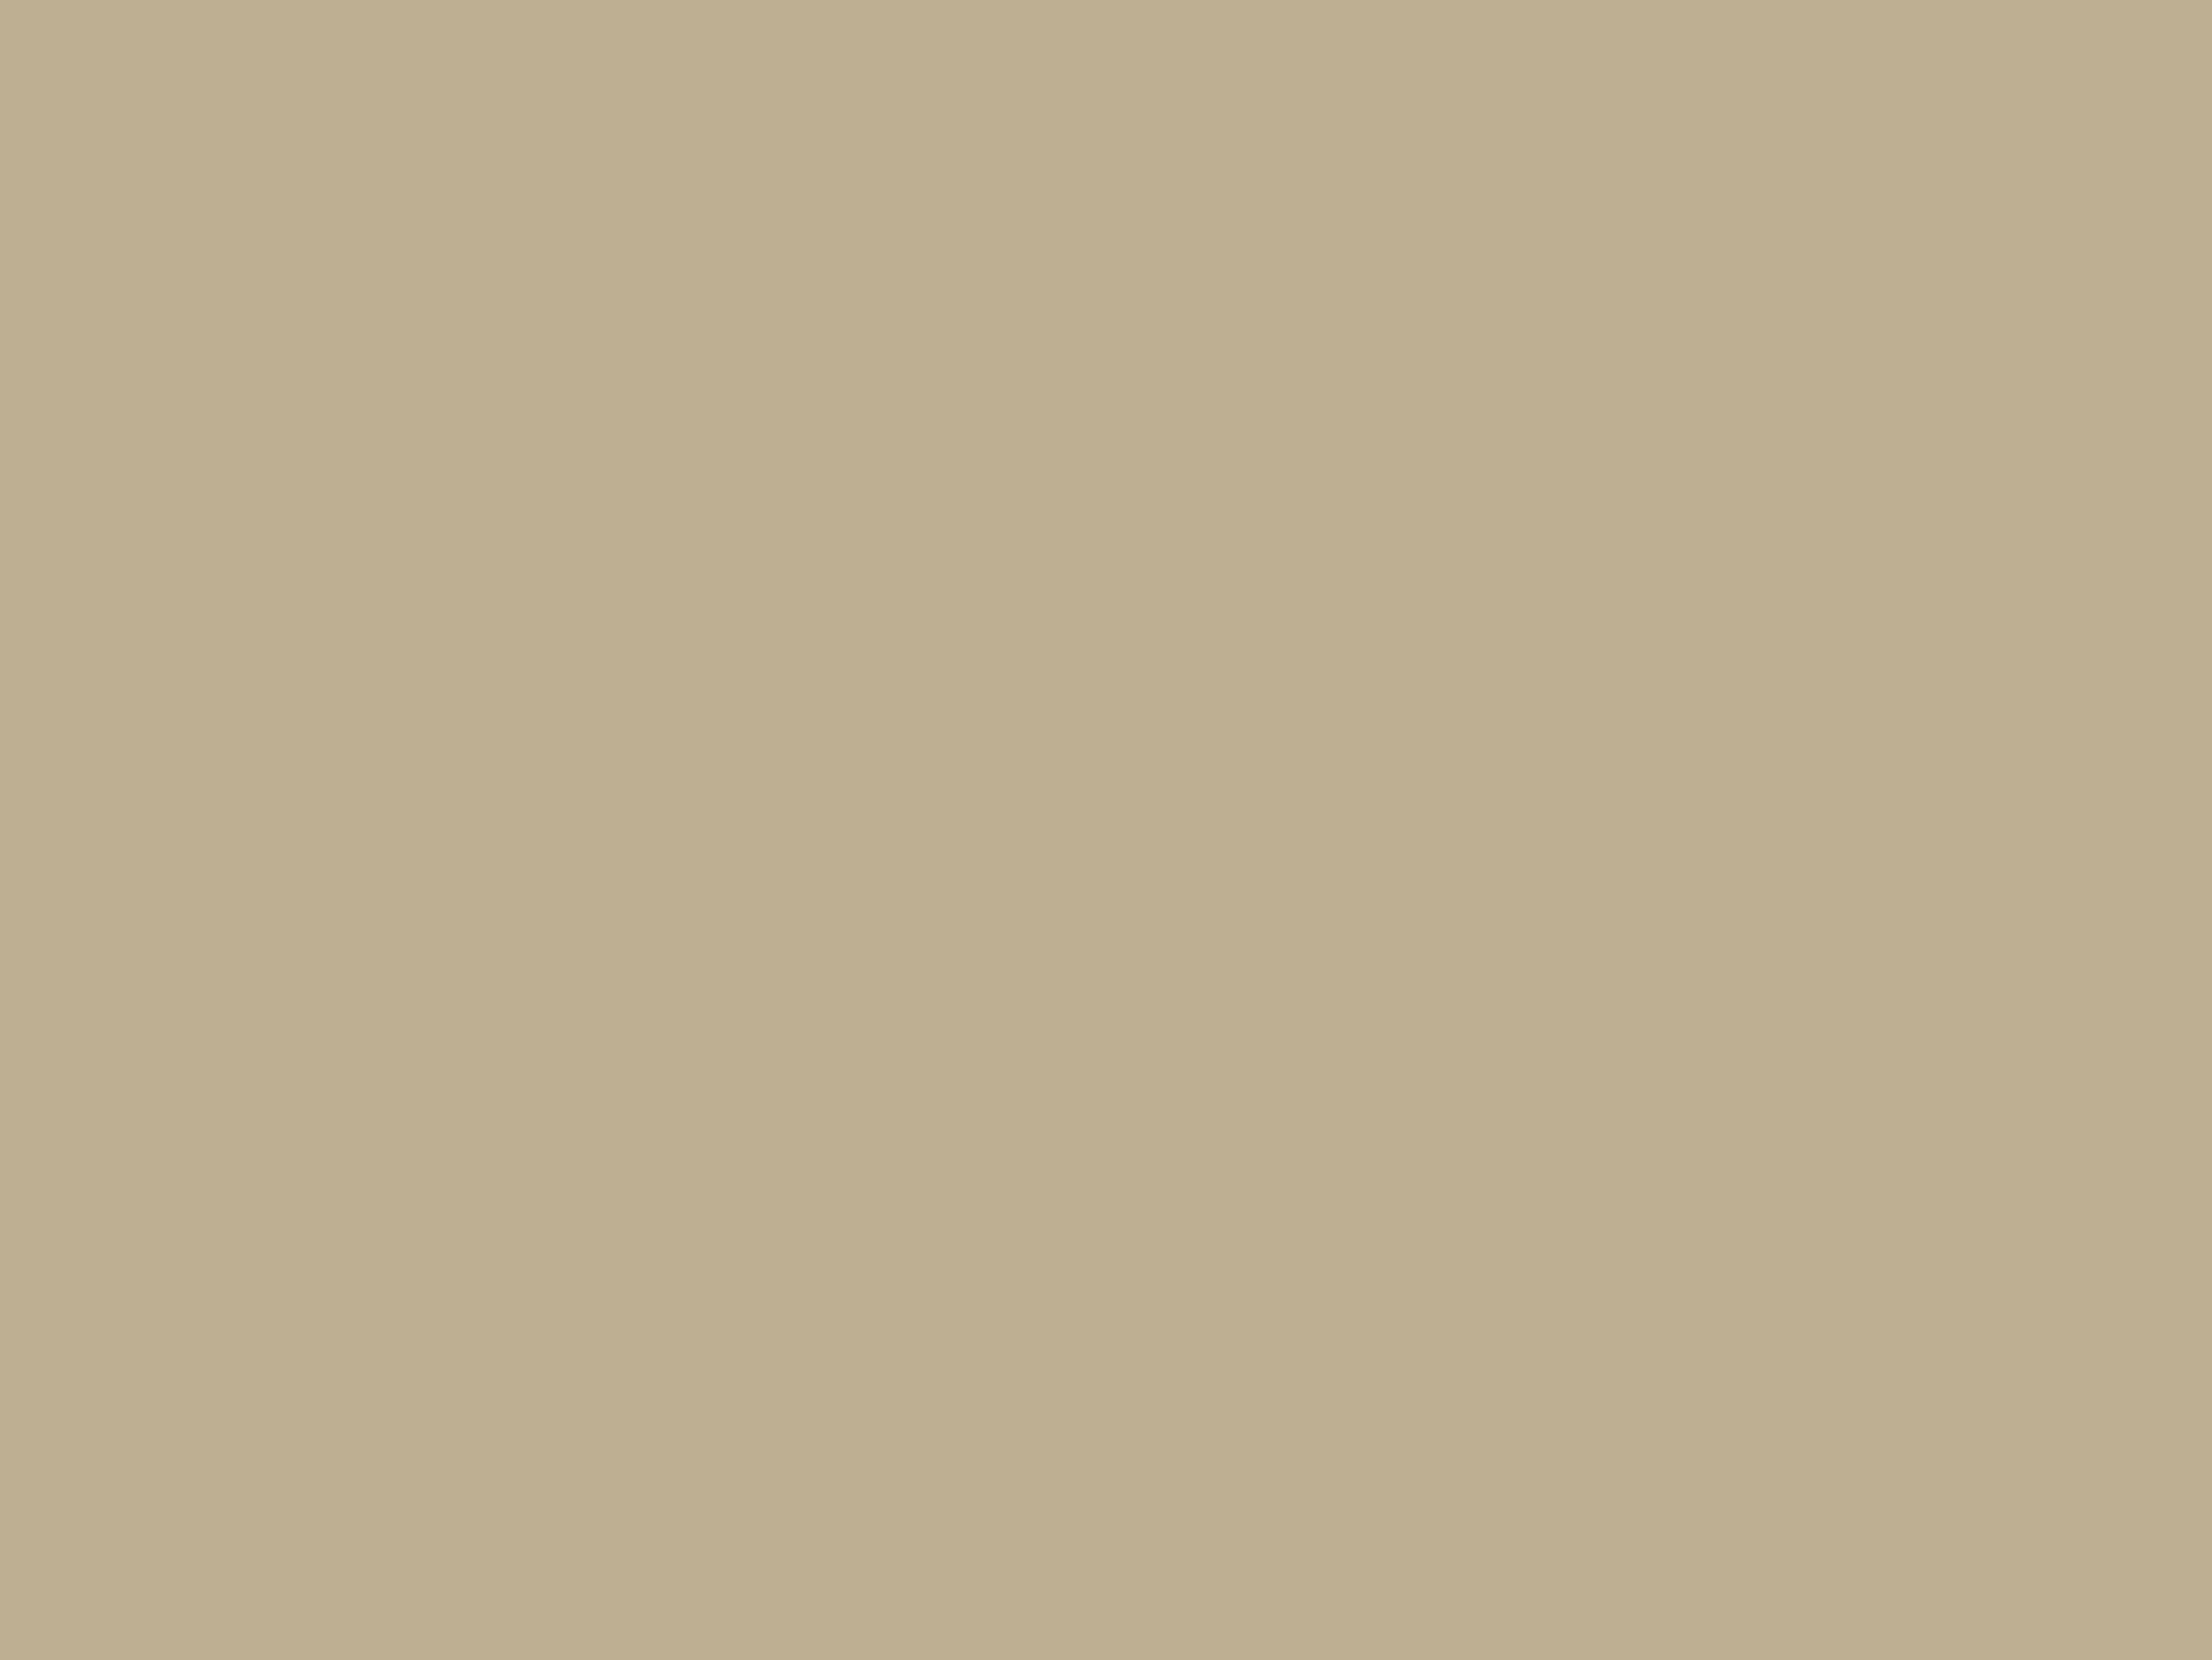 Михай Зичи. Бал в Концертном зале Зимнего дворца во время официального визита шаха Насир ад-Дина в мае 1873 года (фрагмент). 1873. Государственный Эрмитаж, Санкт-Петербург